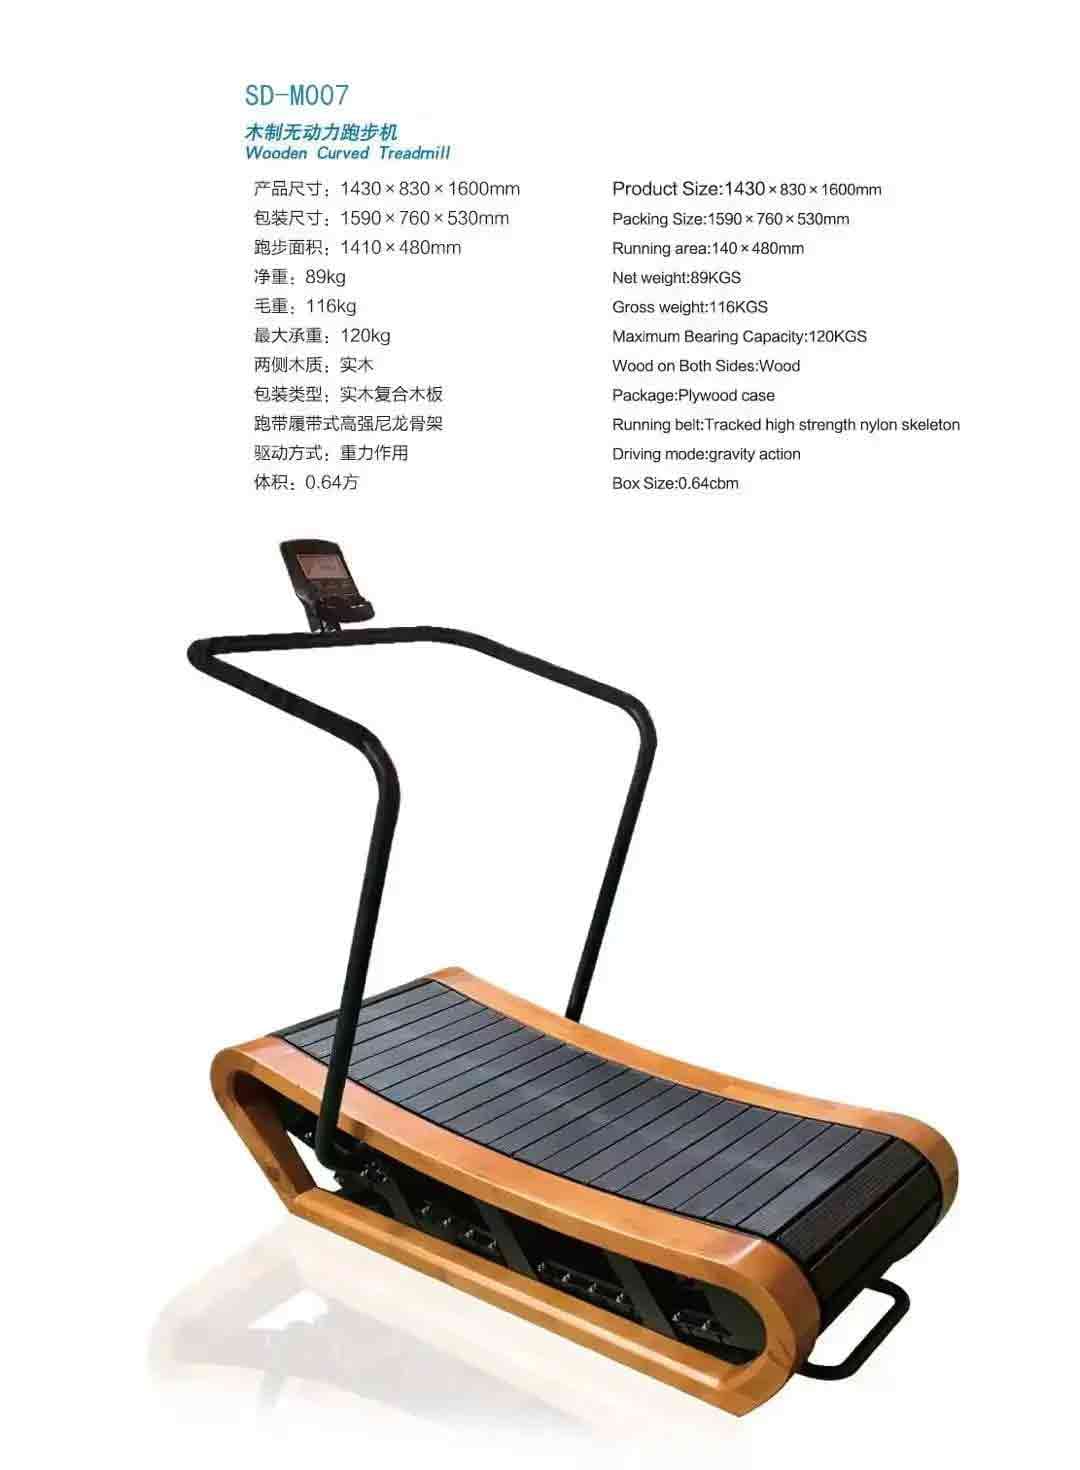 Treadmill - SD-M007 - detail3